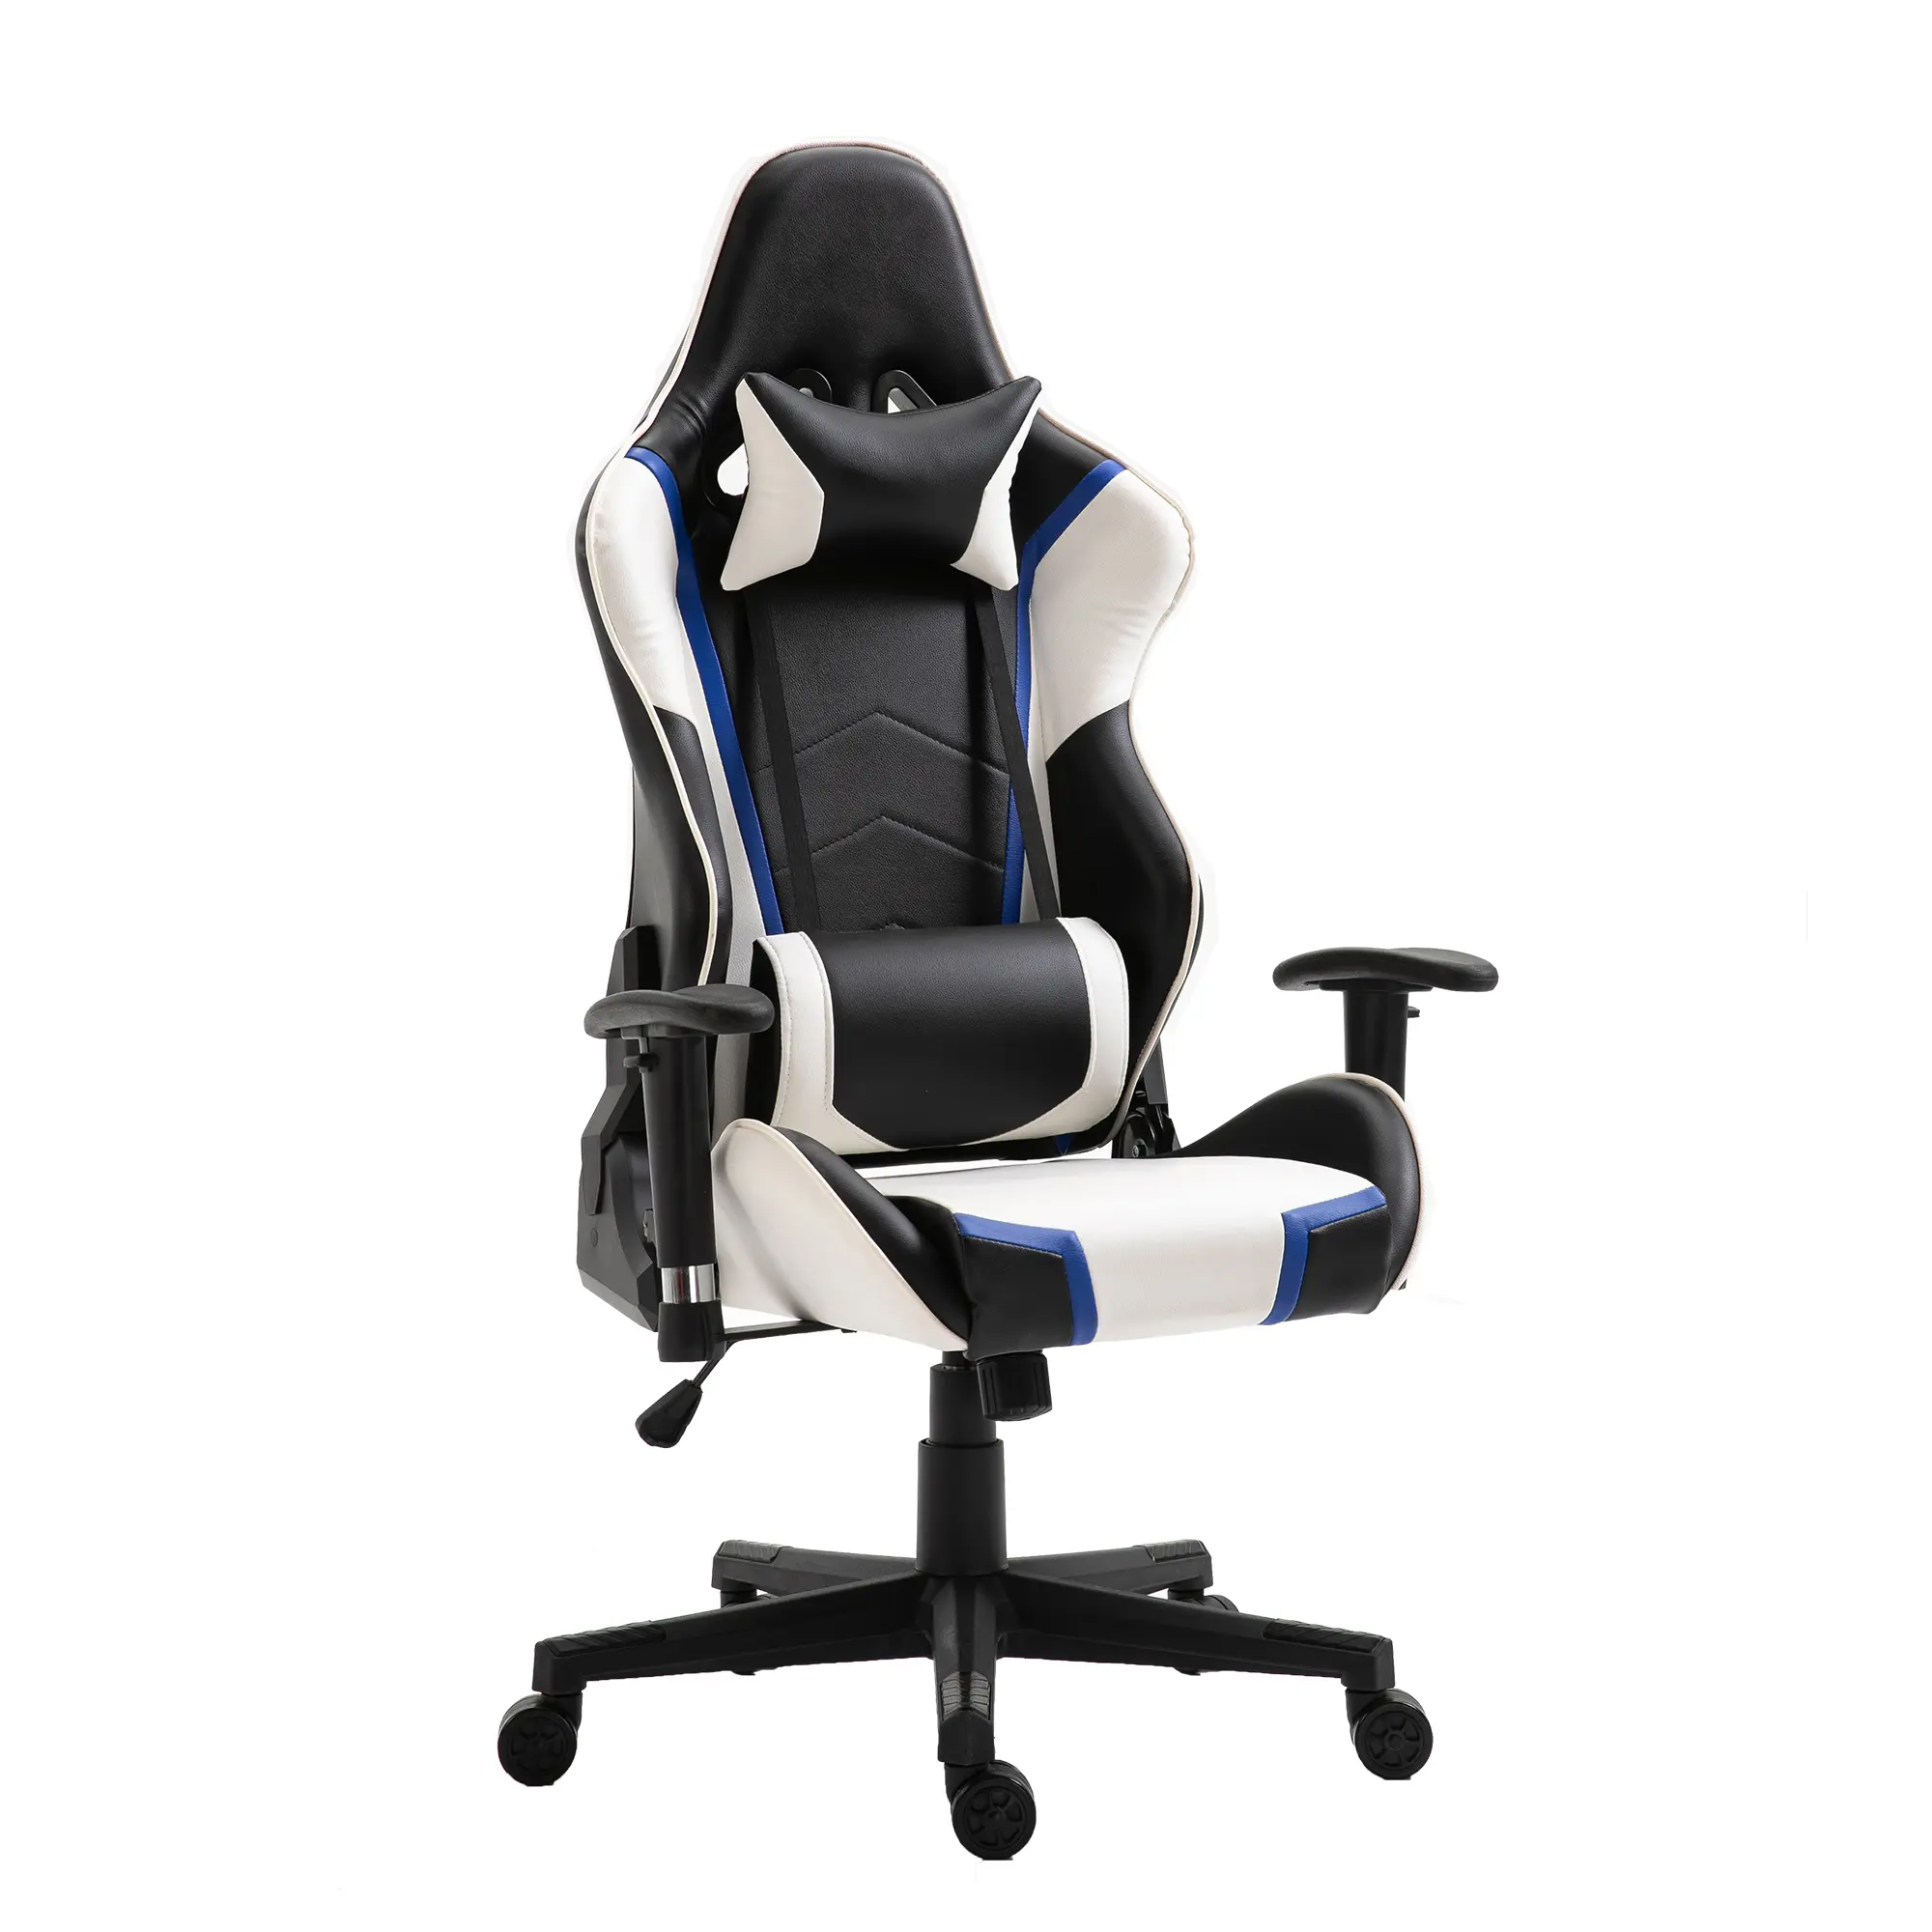 Proč byste si měli koupit ergonomické židle do vaší kanceláře